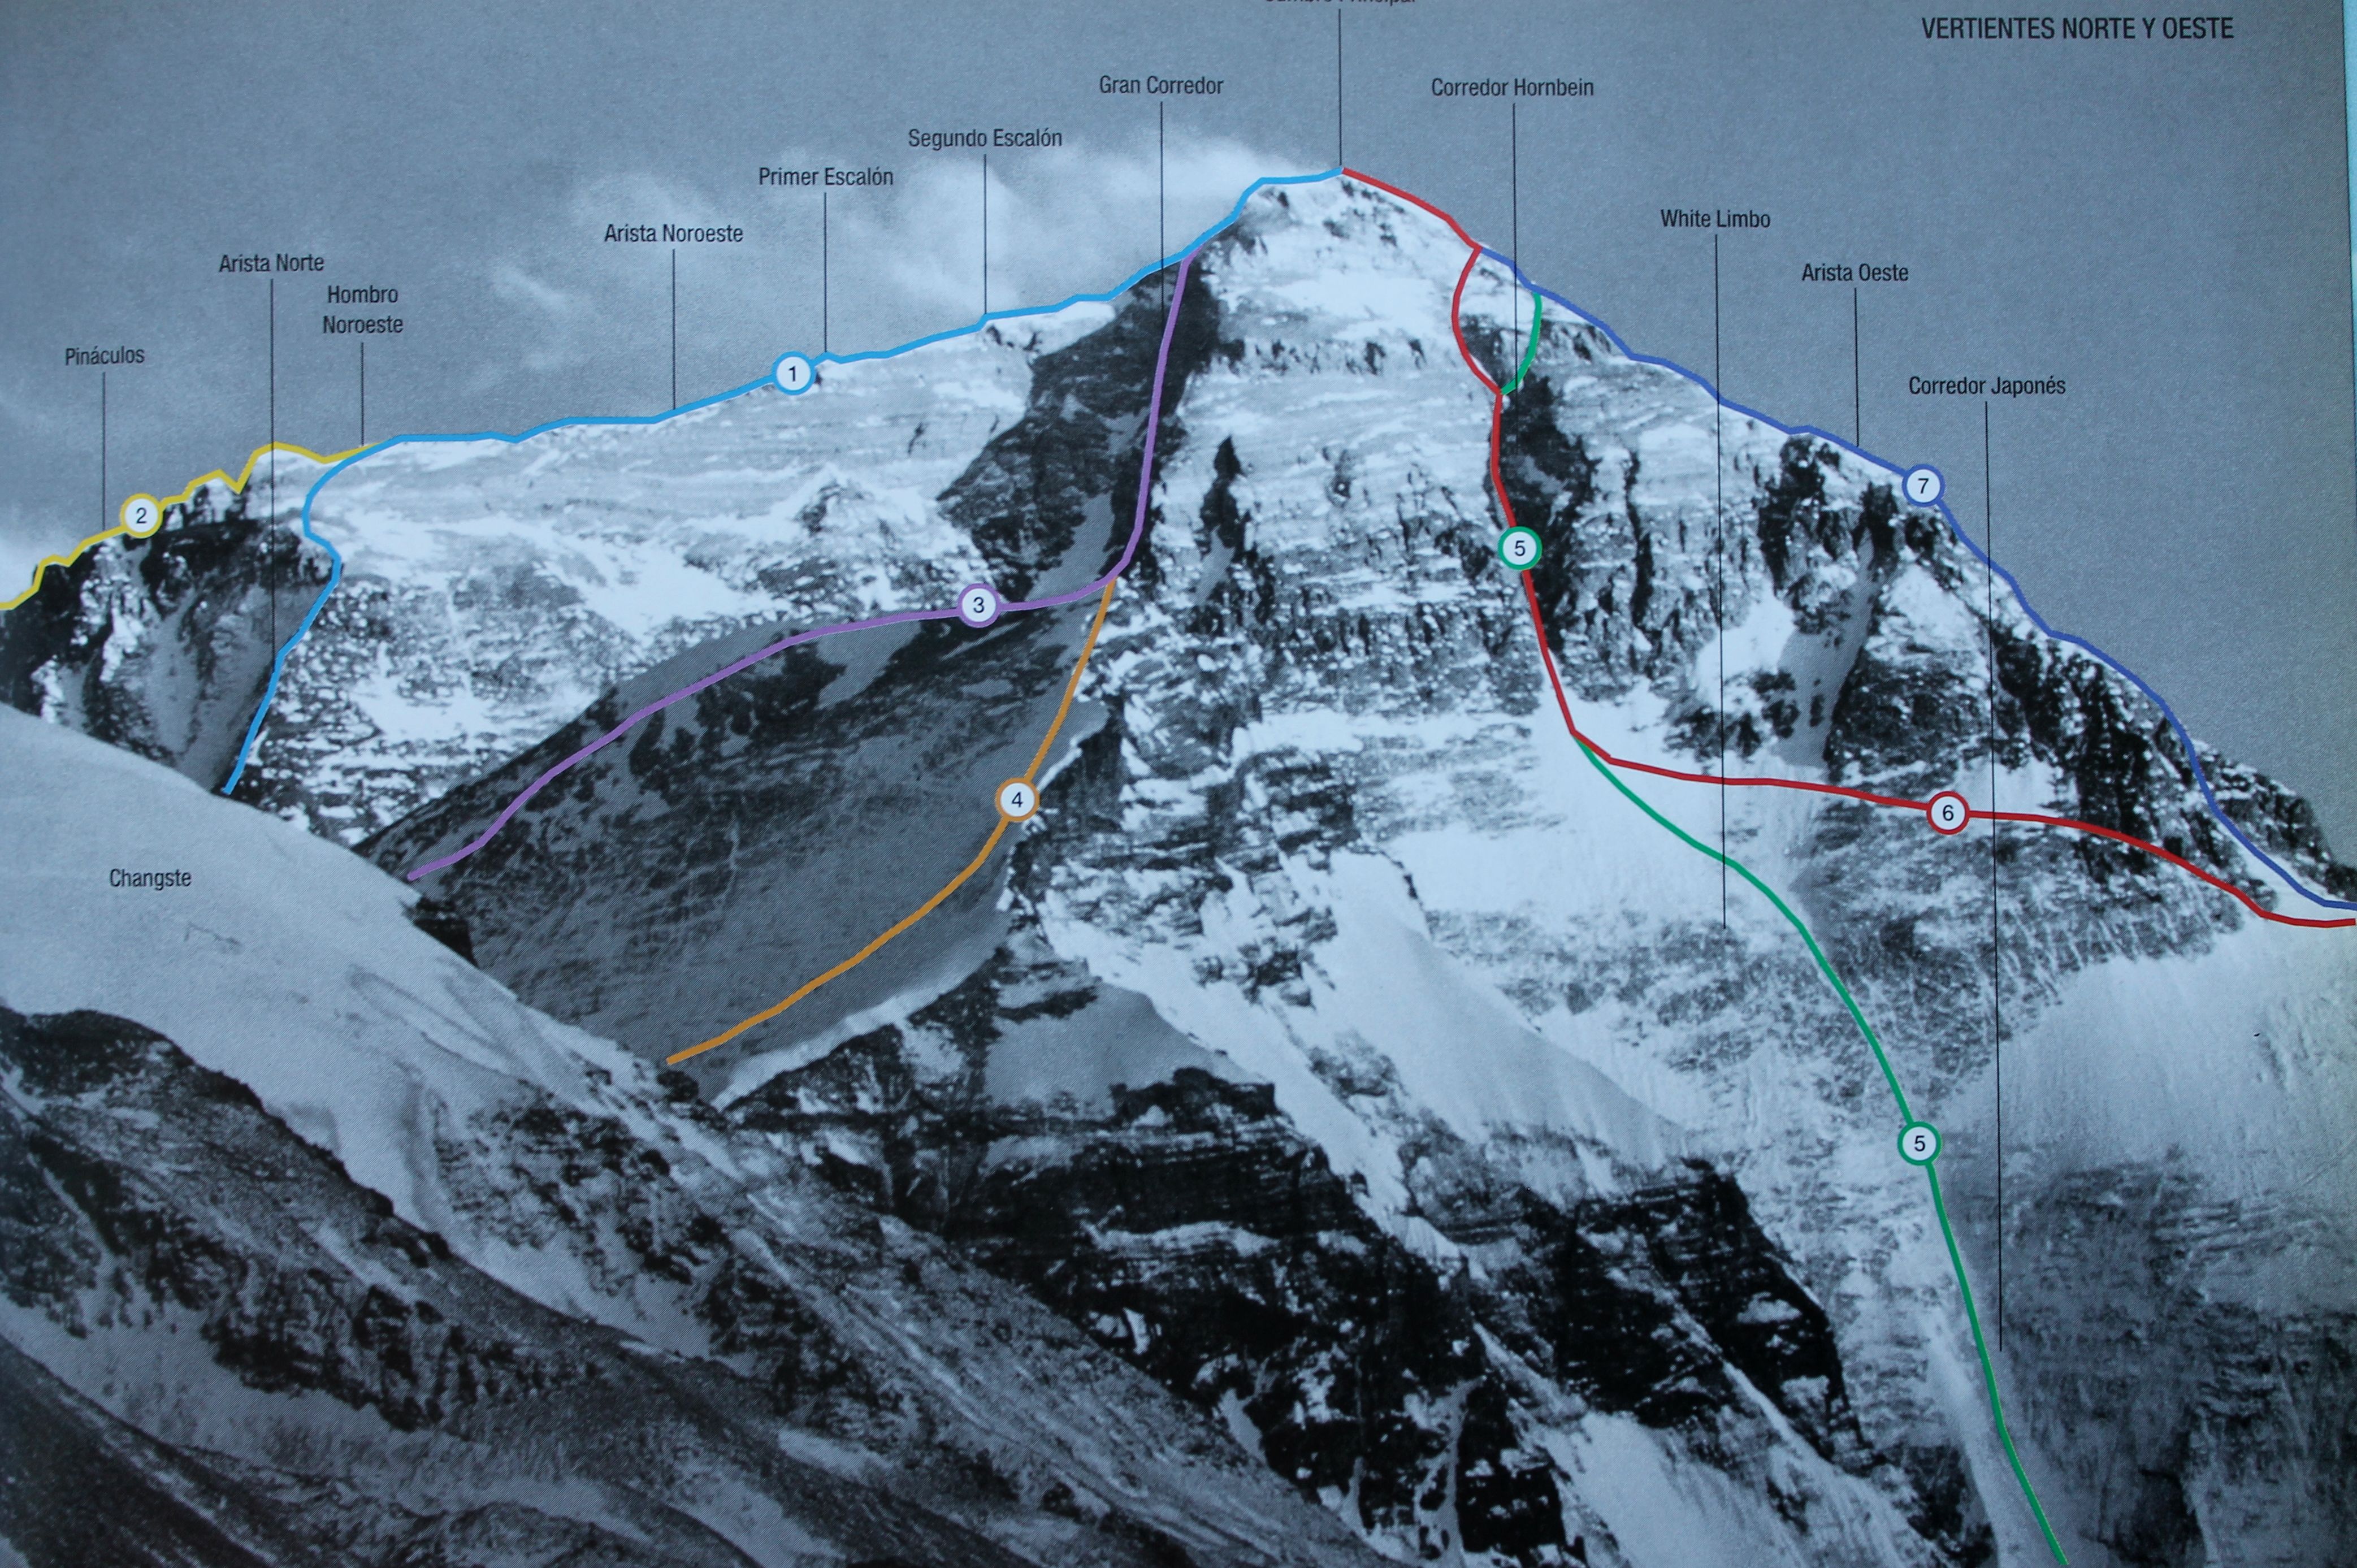 Эверест с северо-востока. Кулуар Хорнбайна (японский) - номер 4 на фото. Кулуар Нортона (австралийский) - номер 5. 